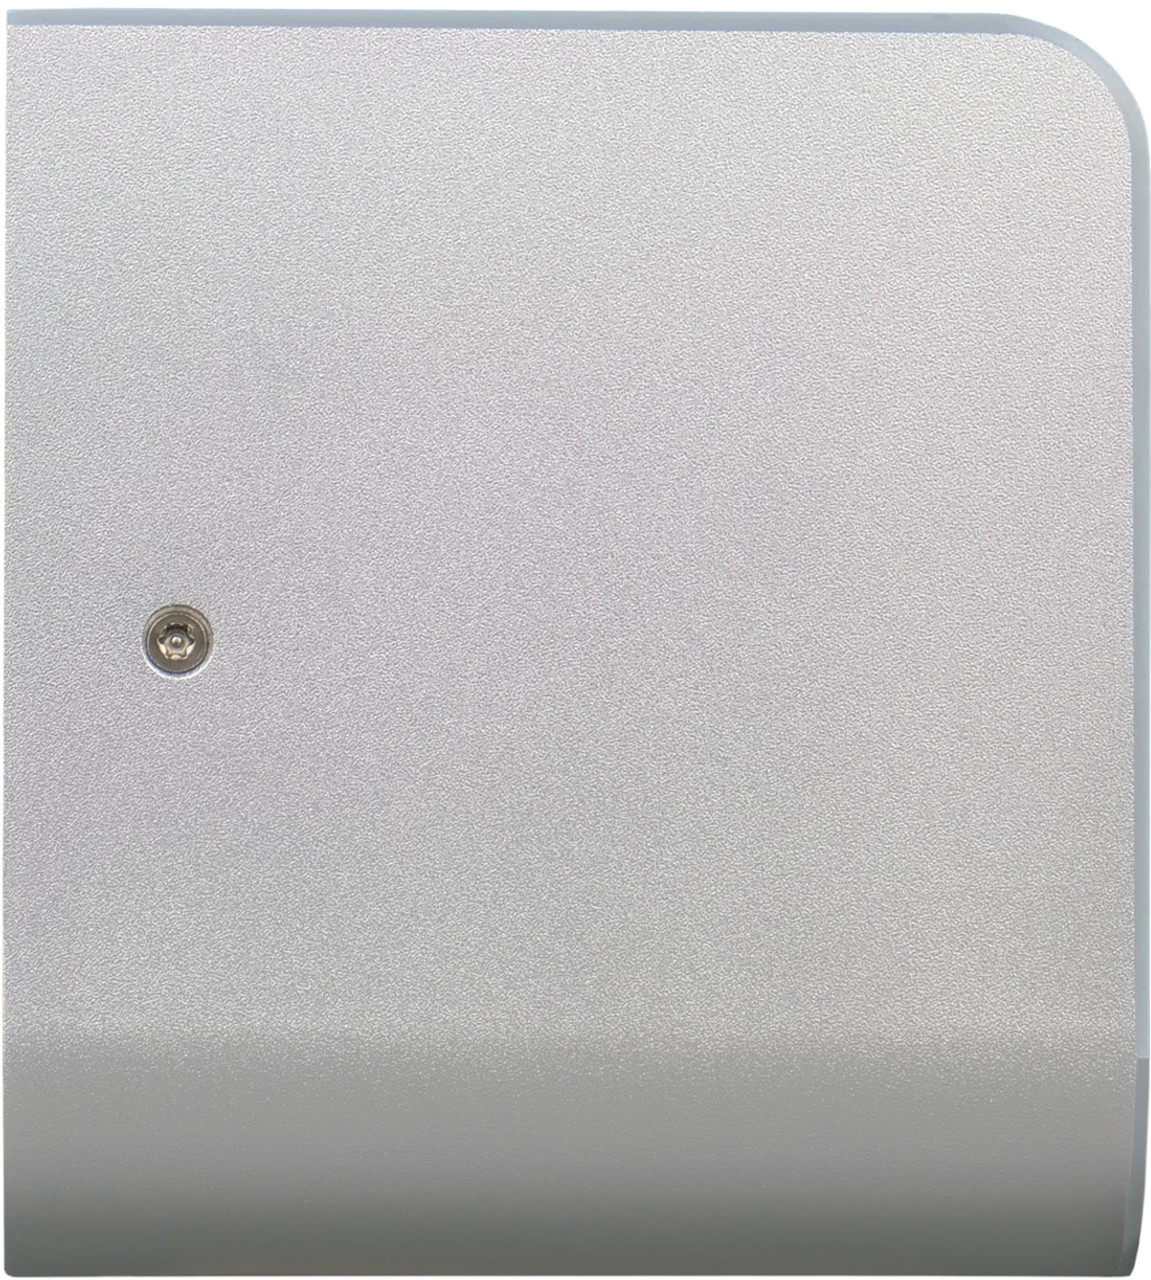 HD-D380S - Diamond Hand Dryer - Silver - Side Profile